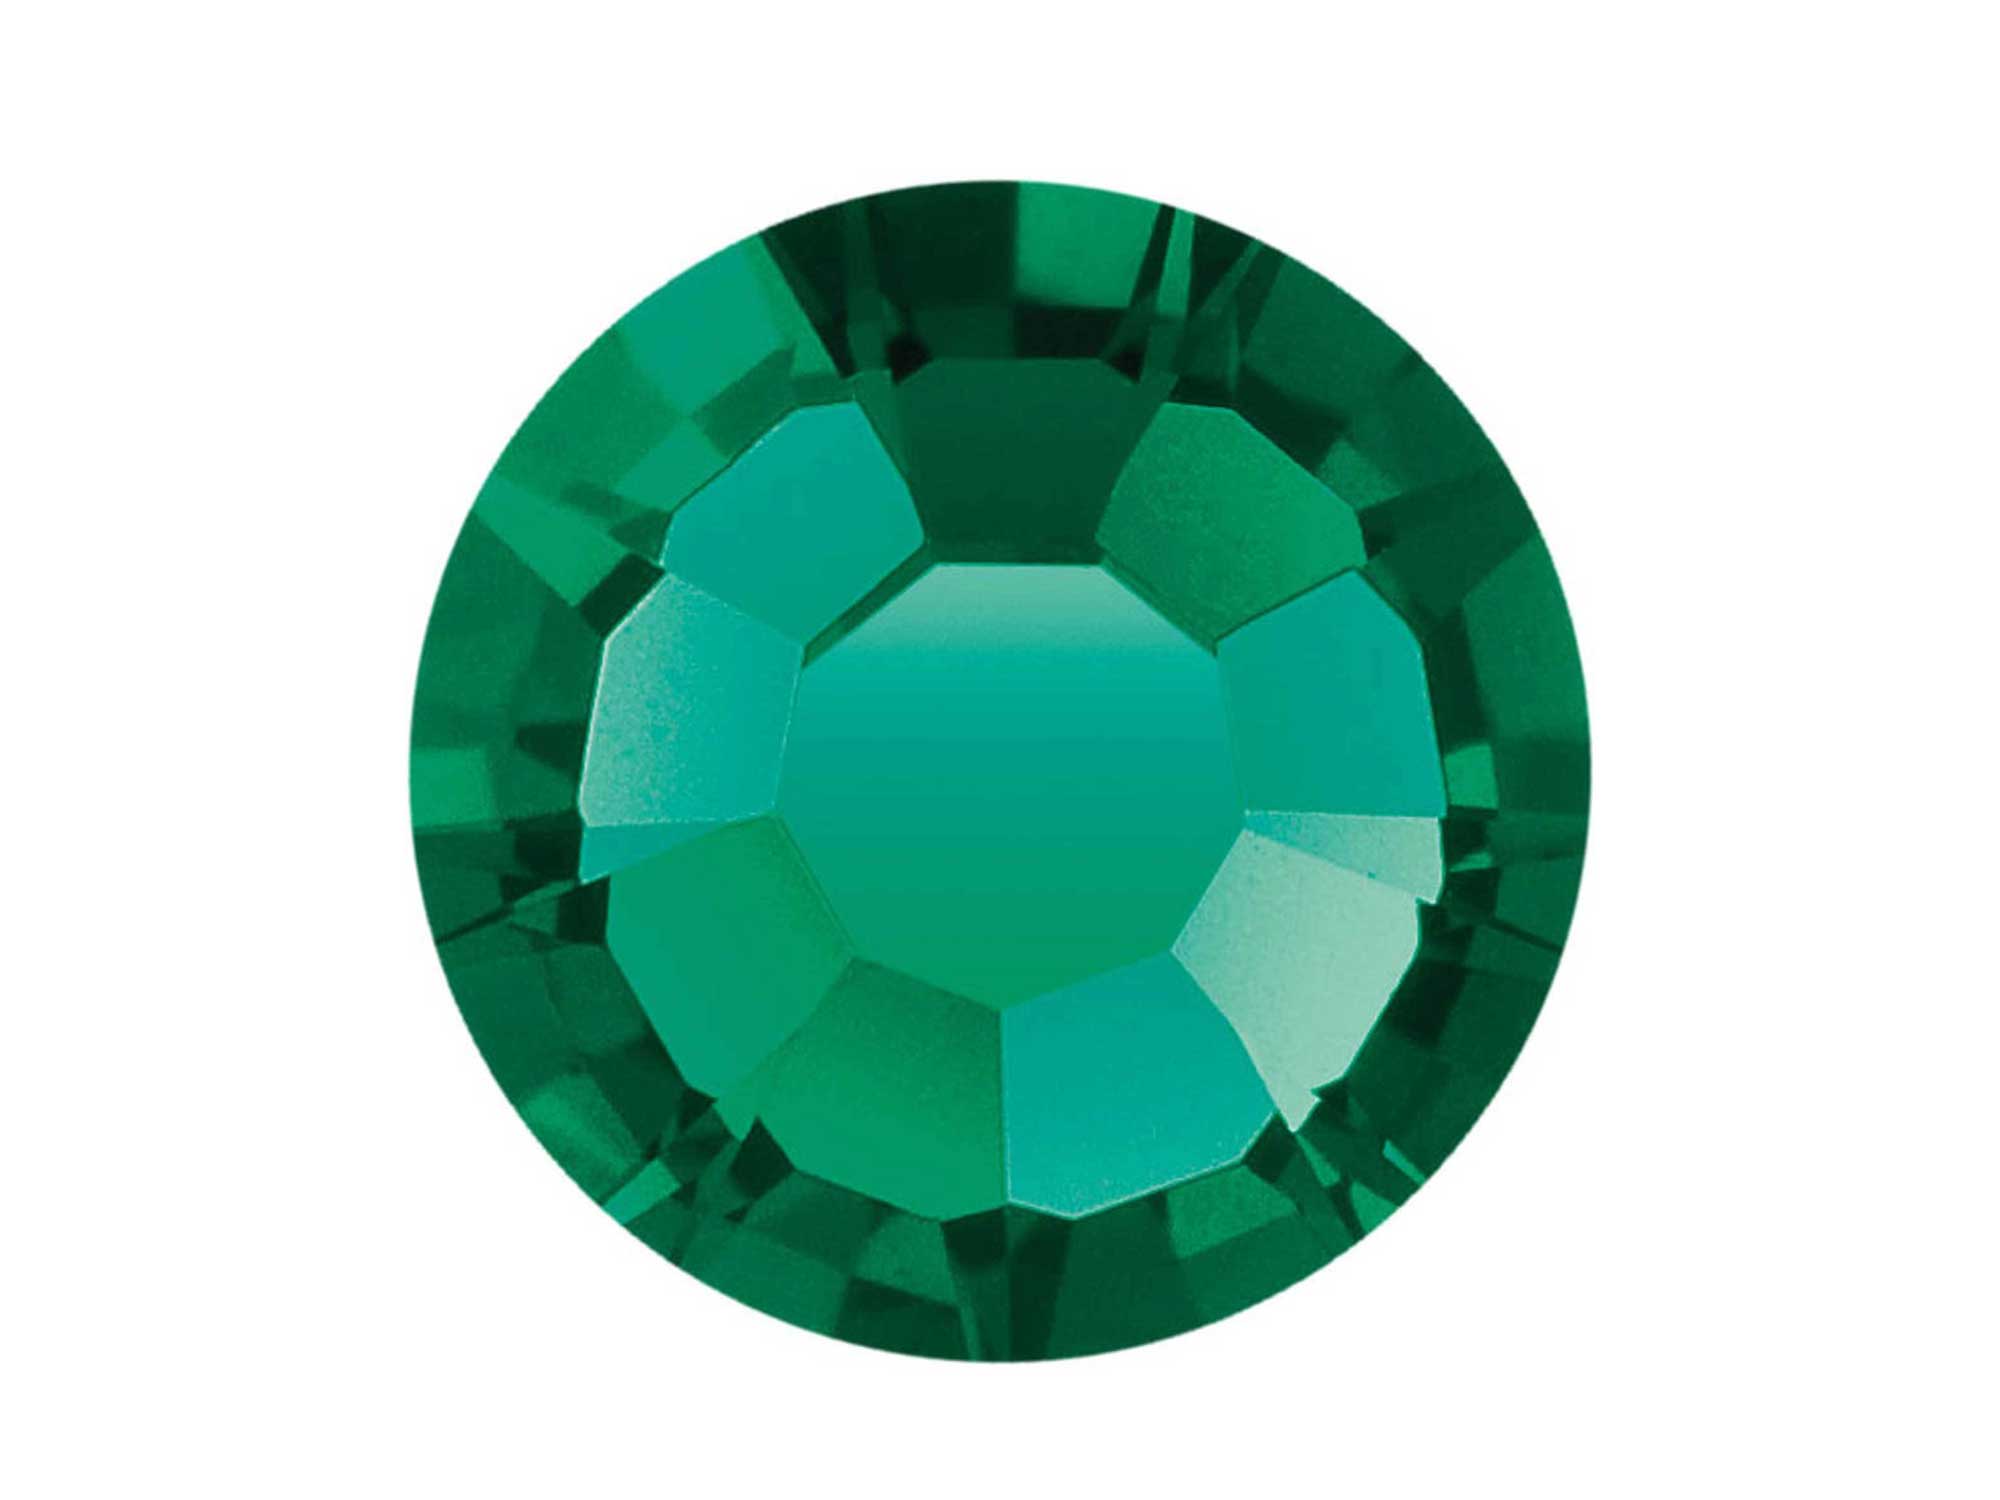 Emerald, Preciosa VIVA or MAXIMA Chaton Roses (Rhinestone Flatbacks), Genuine Czech Crystals, green color